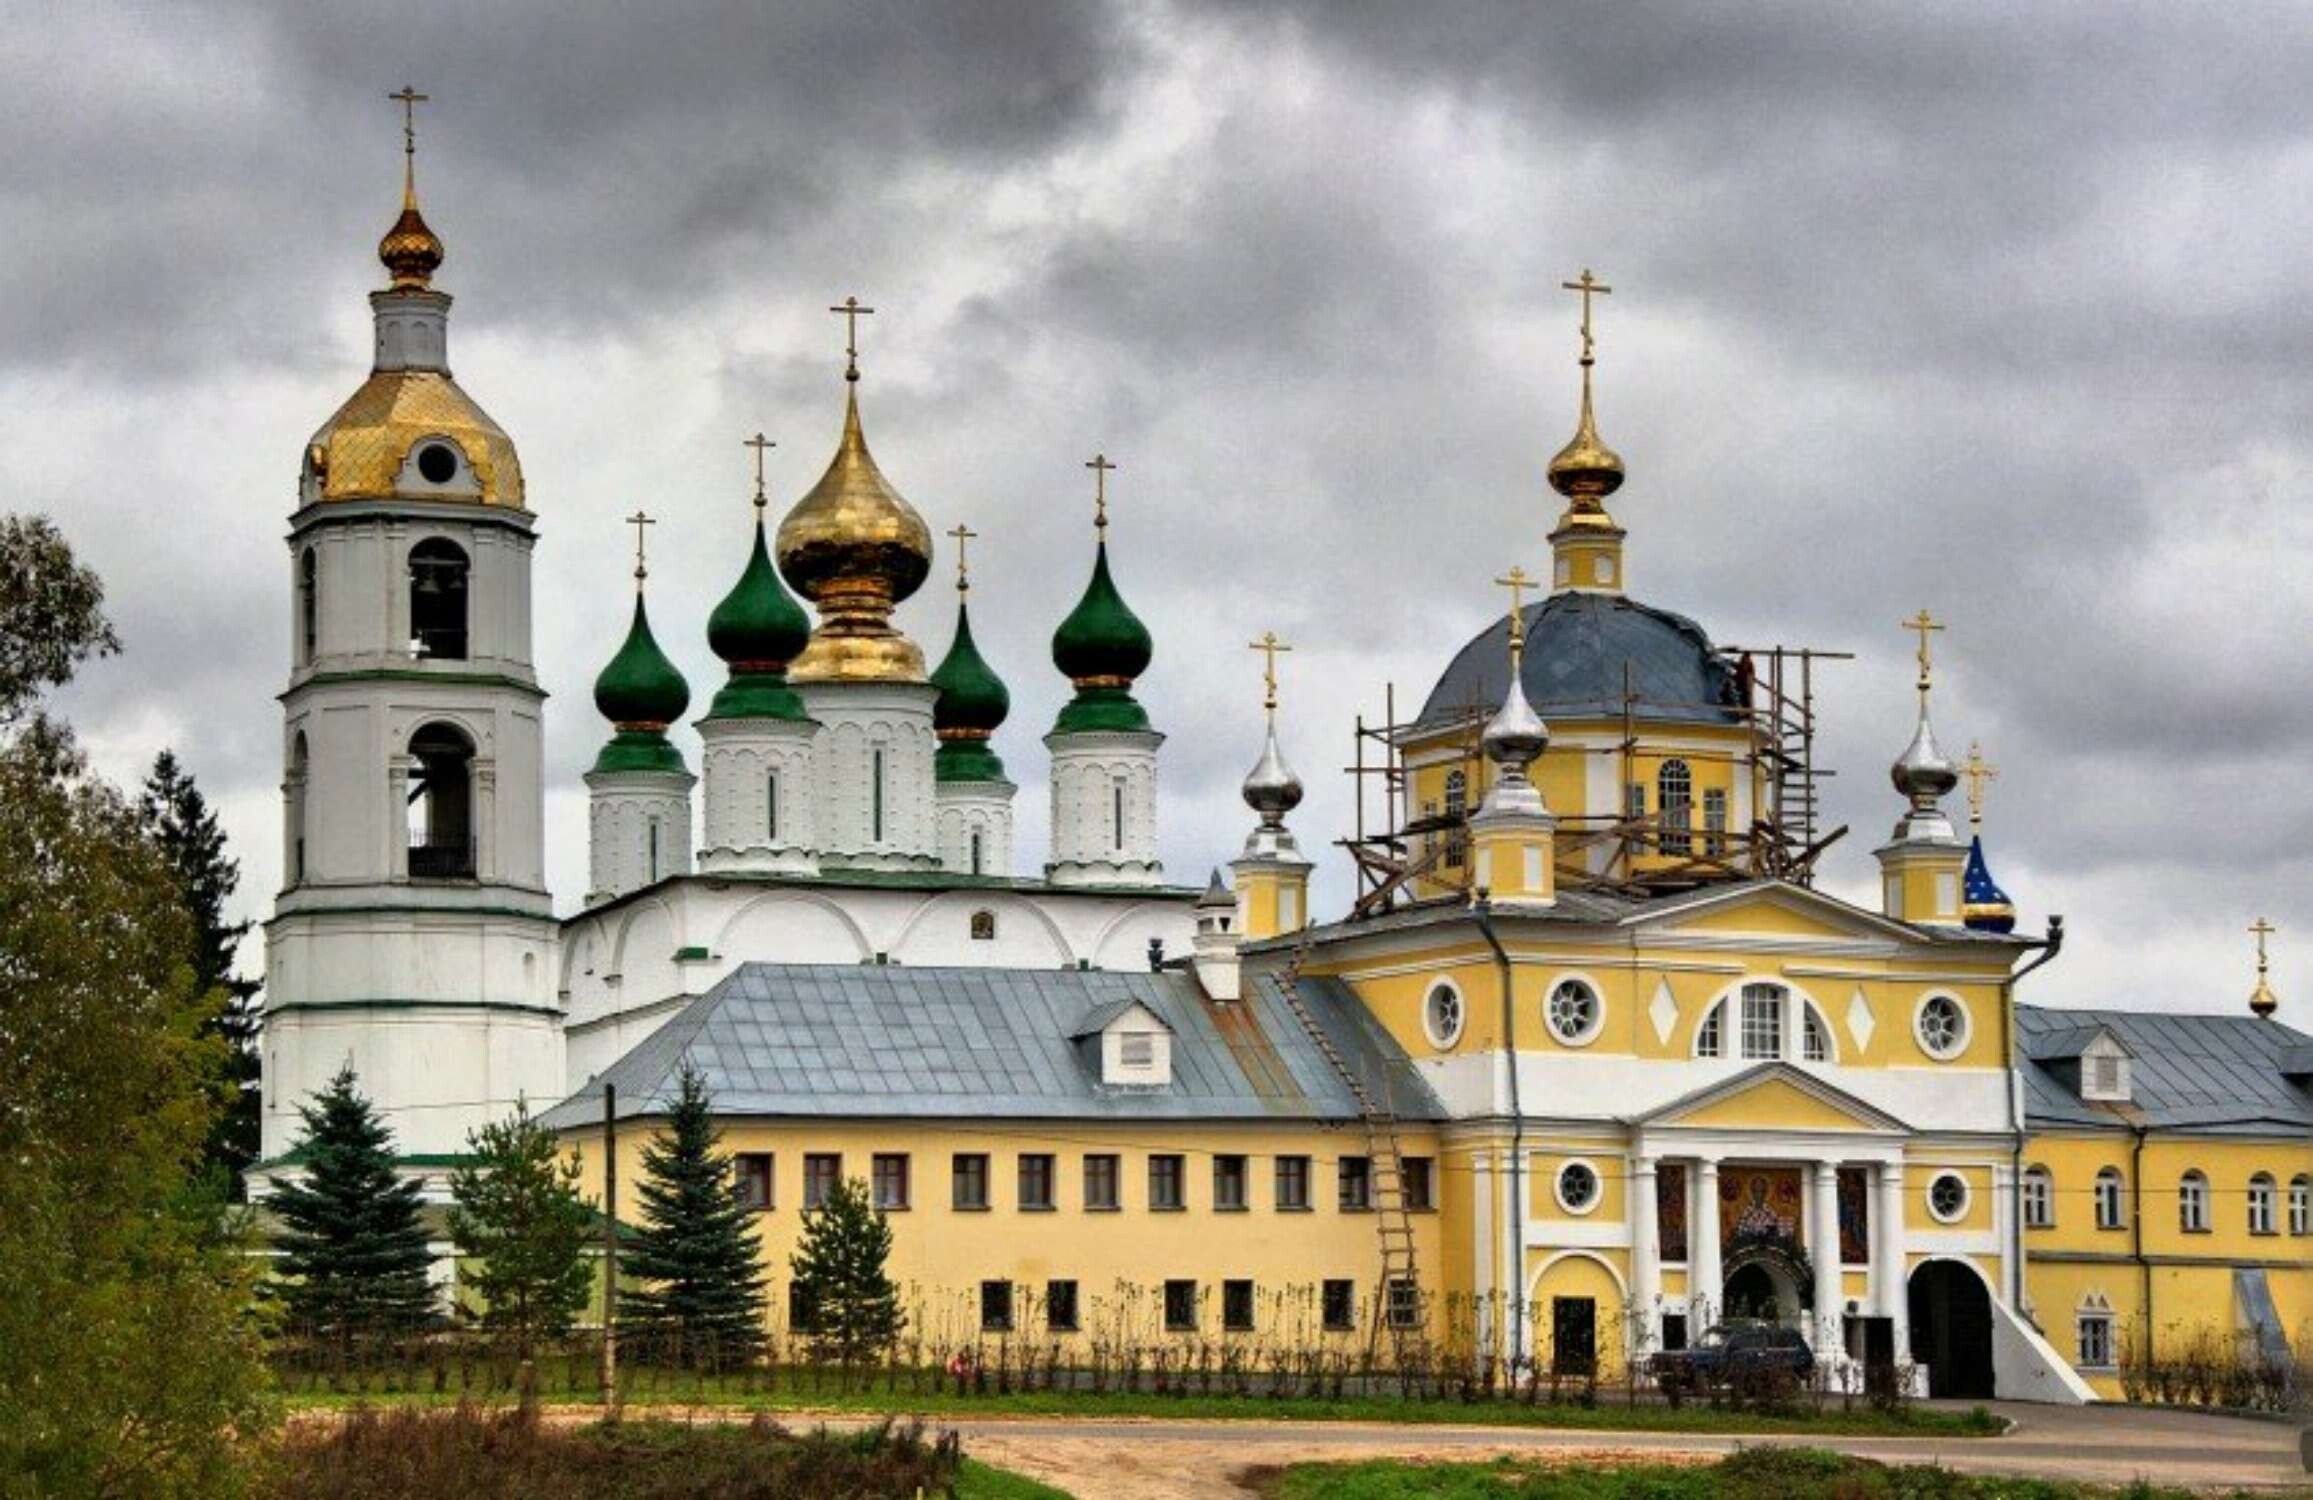 Николо-Шартомский монастырь Ивановская